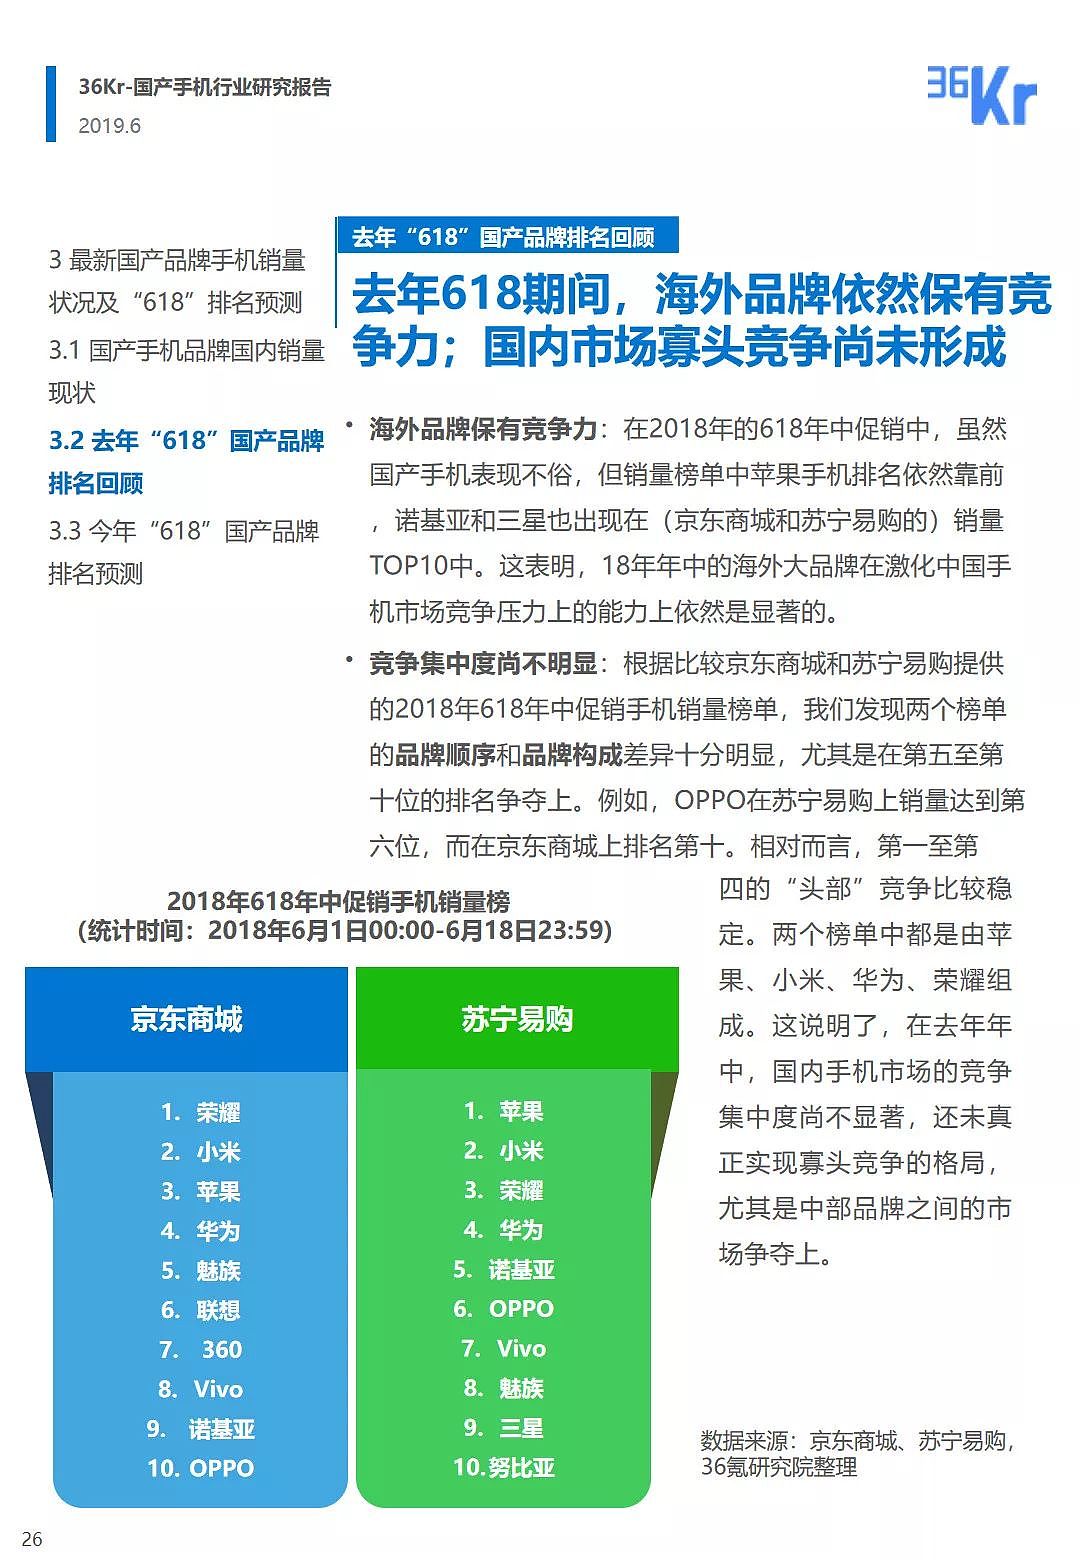 中国手机品牌市场营销研究报告 | 36氪研究 - 27